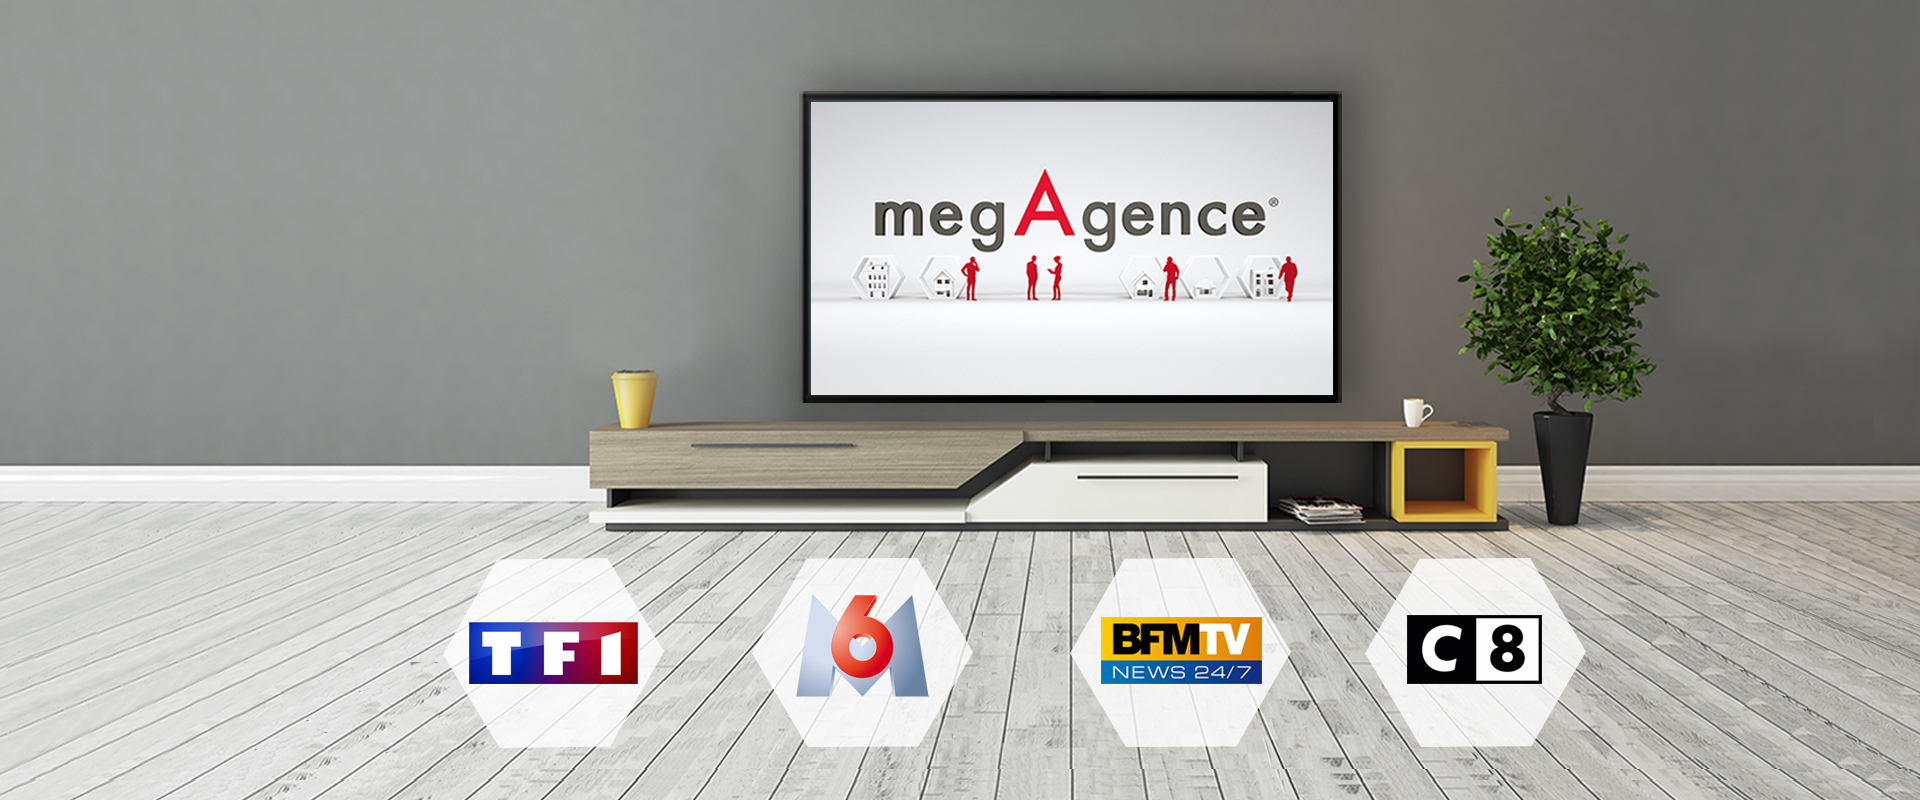 megAgence s’affiche à la TV cet été !